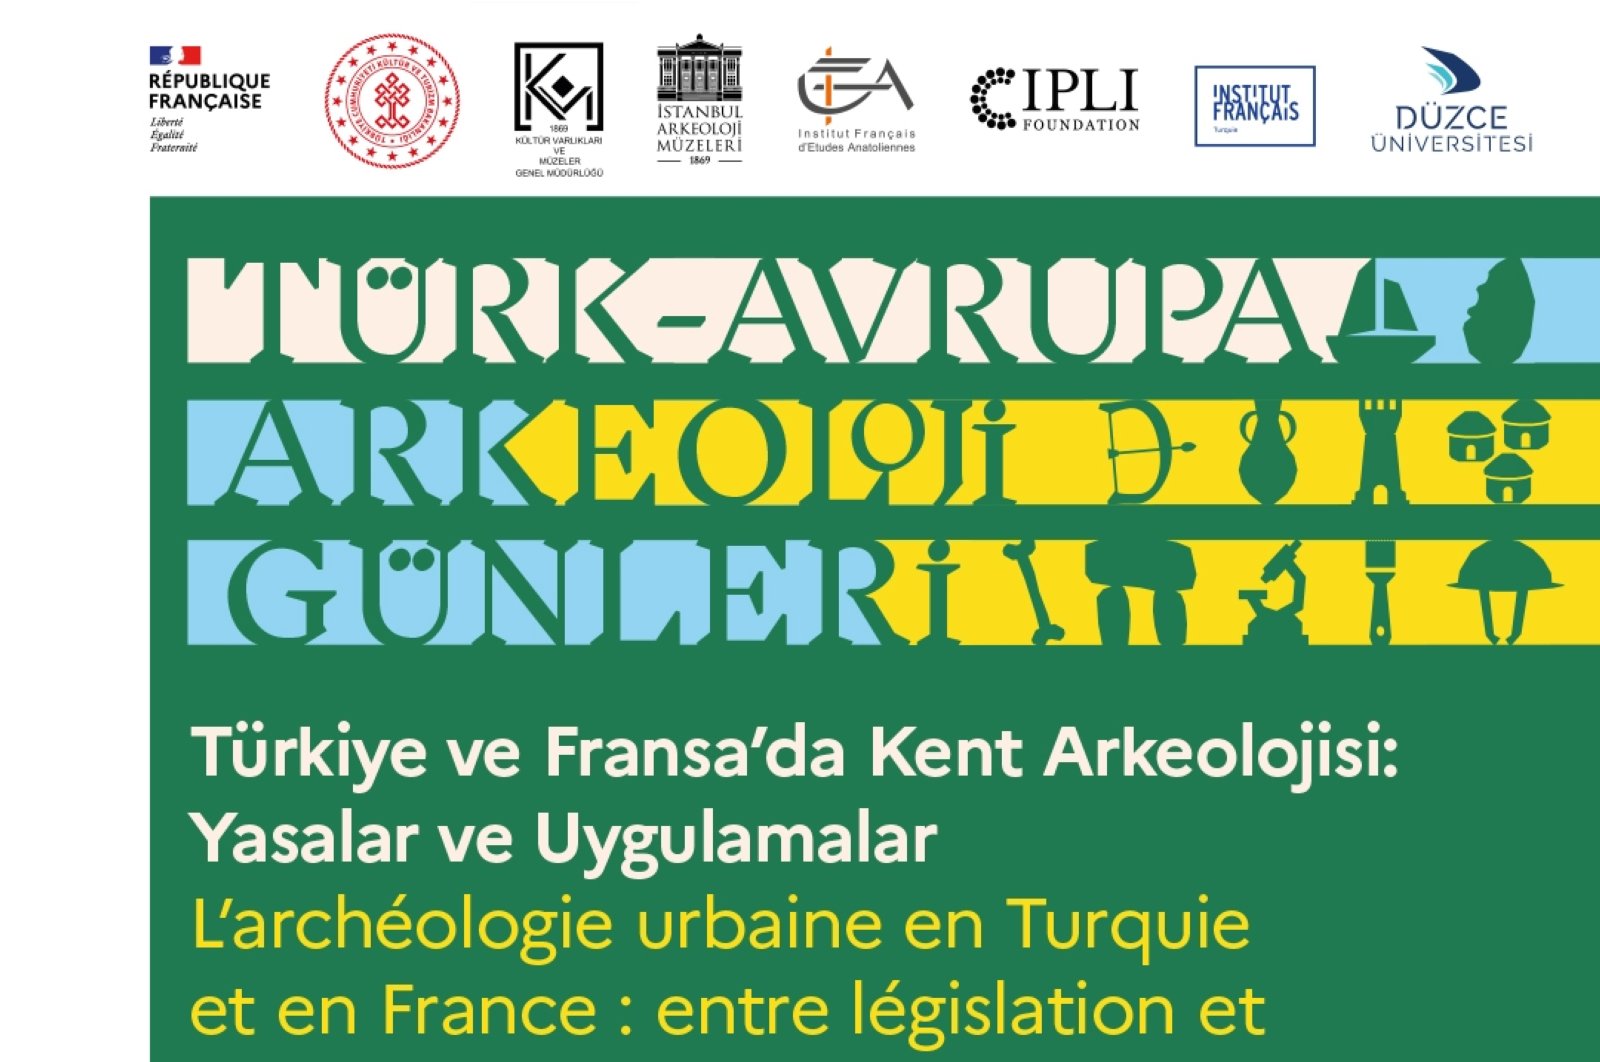 French Institute Türkiye menjadi tuan rumah Hari Arkeologi Turki-Eropa